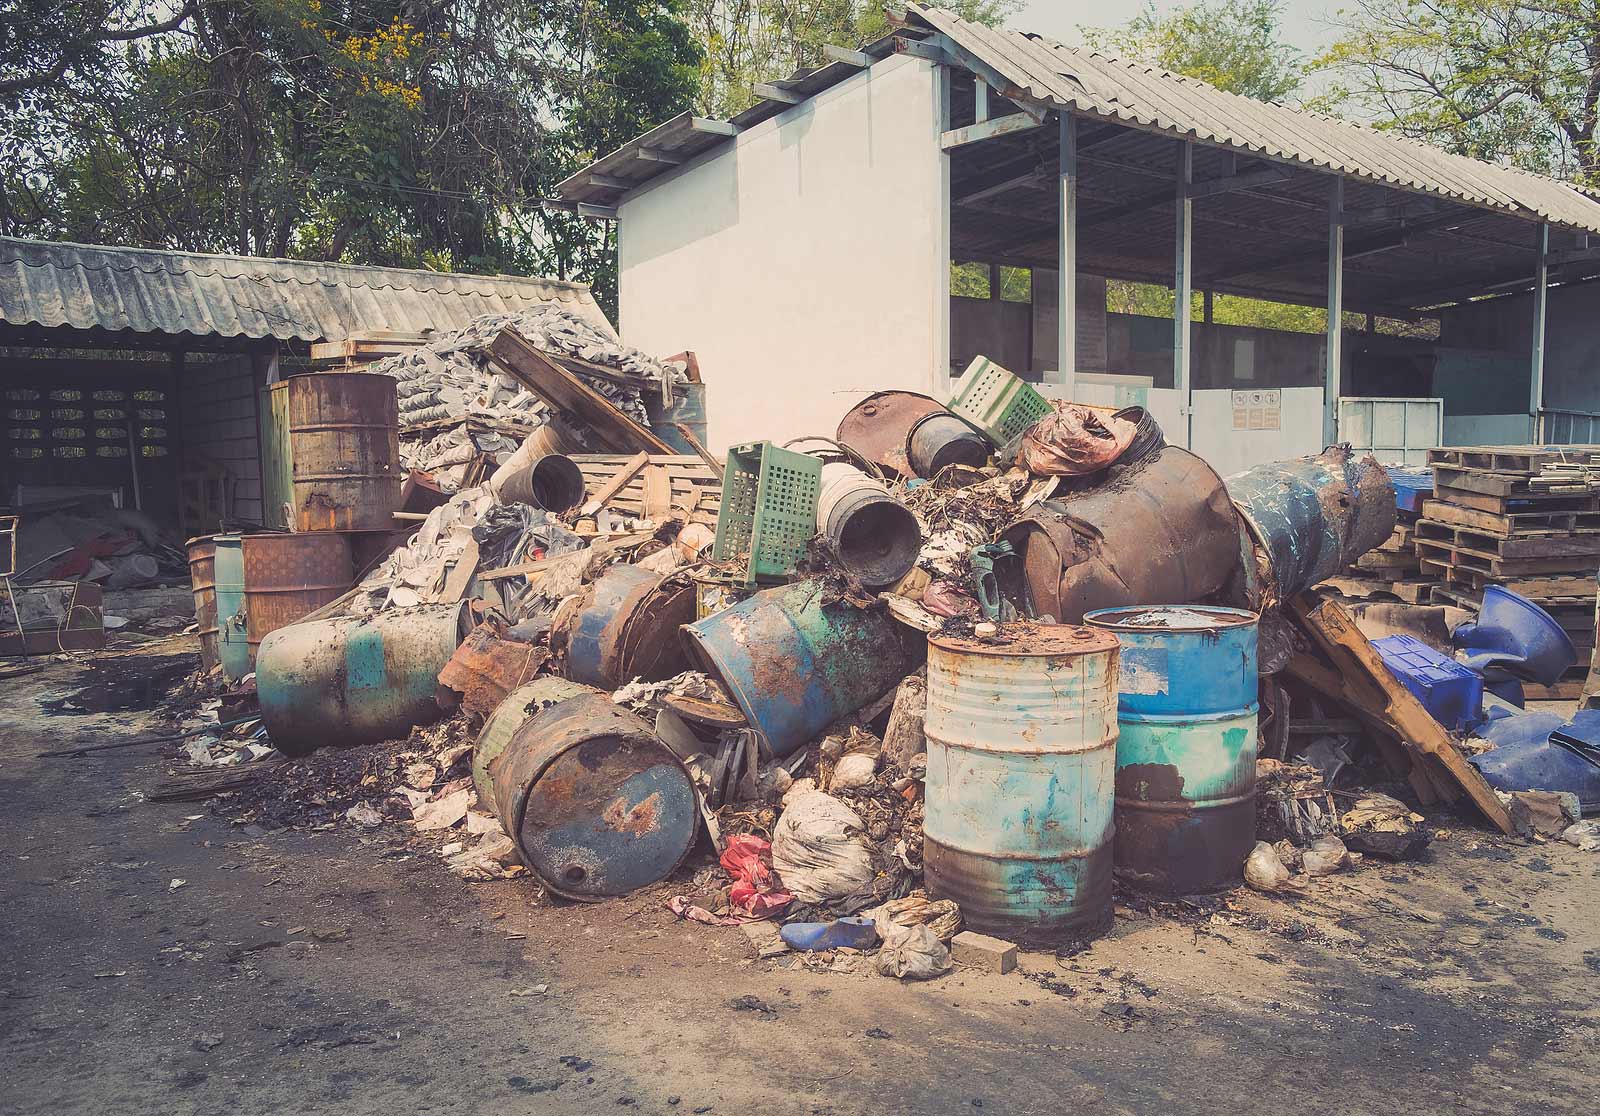 empty barrels piled, mid remediation process